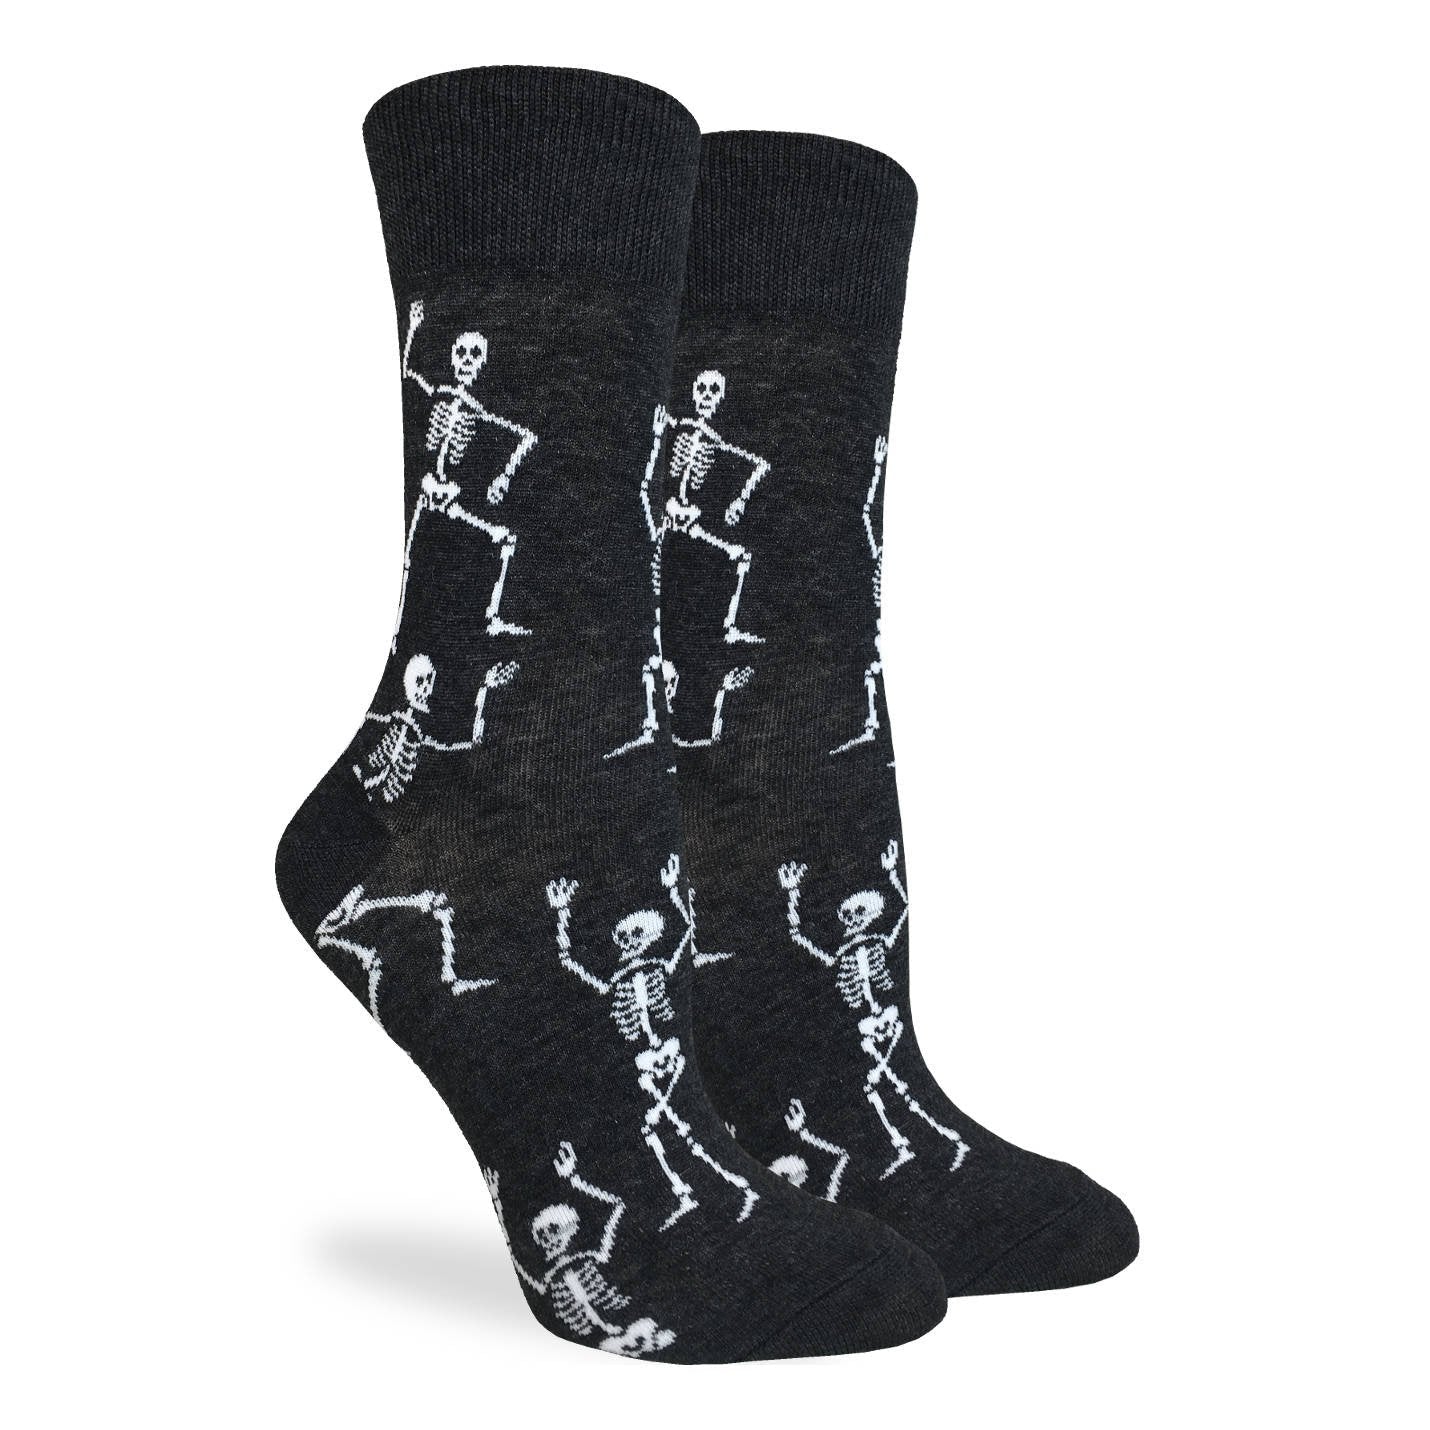 Good Luck Sock -Dancing Skeleton Socks Women's